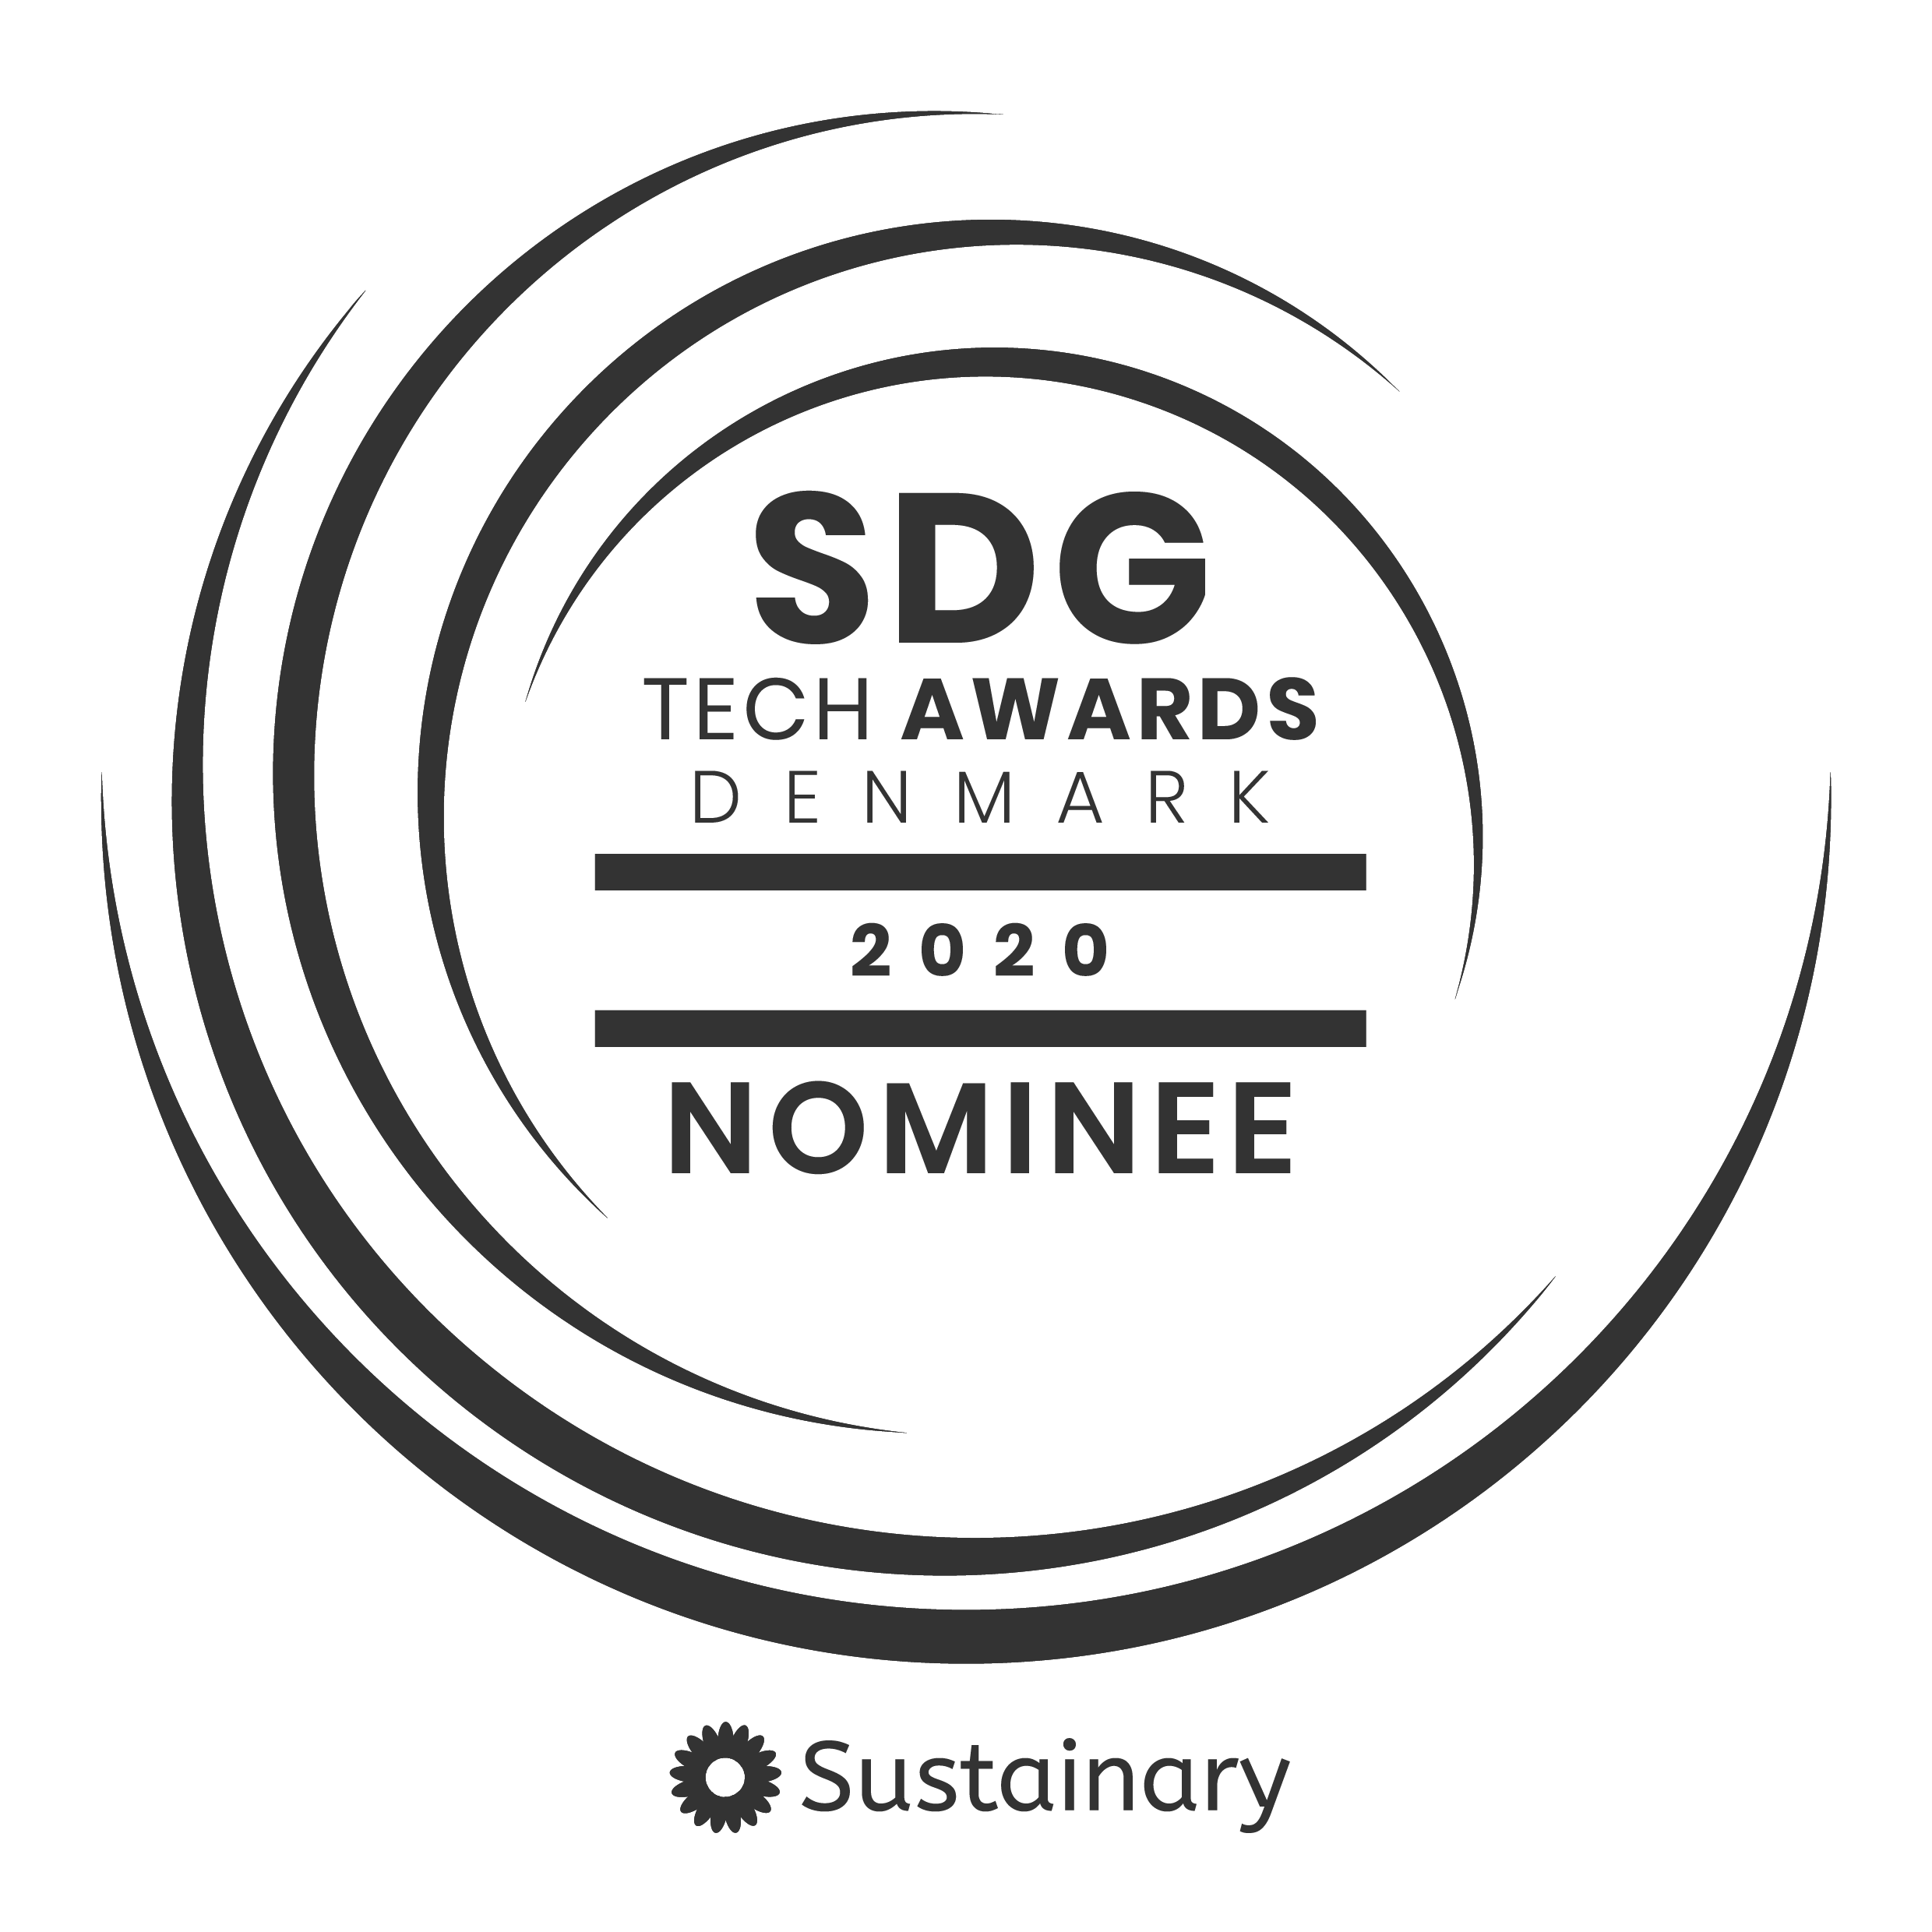 Sdg tech awards 2020